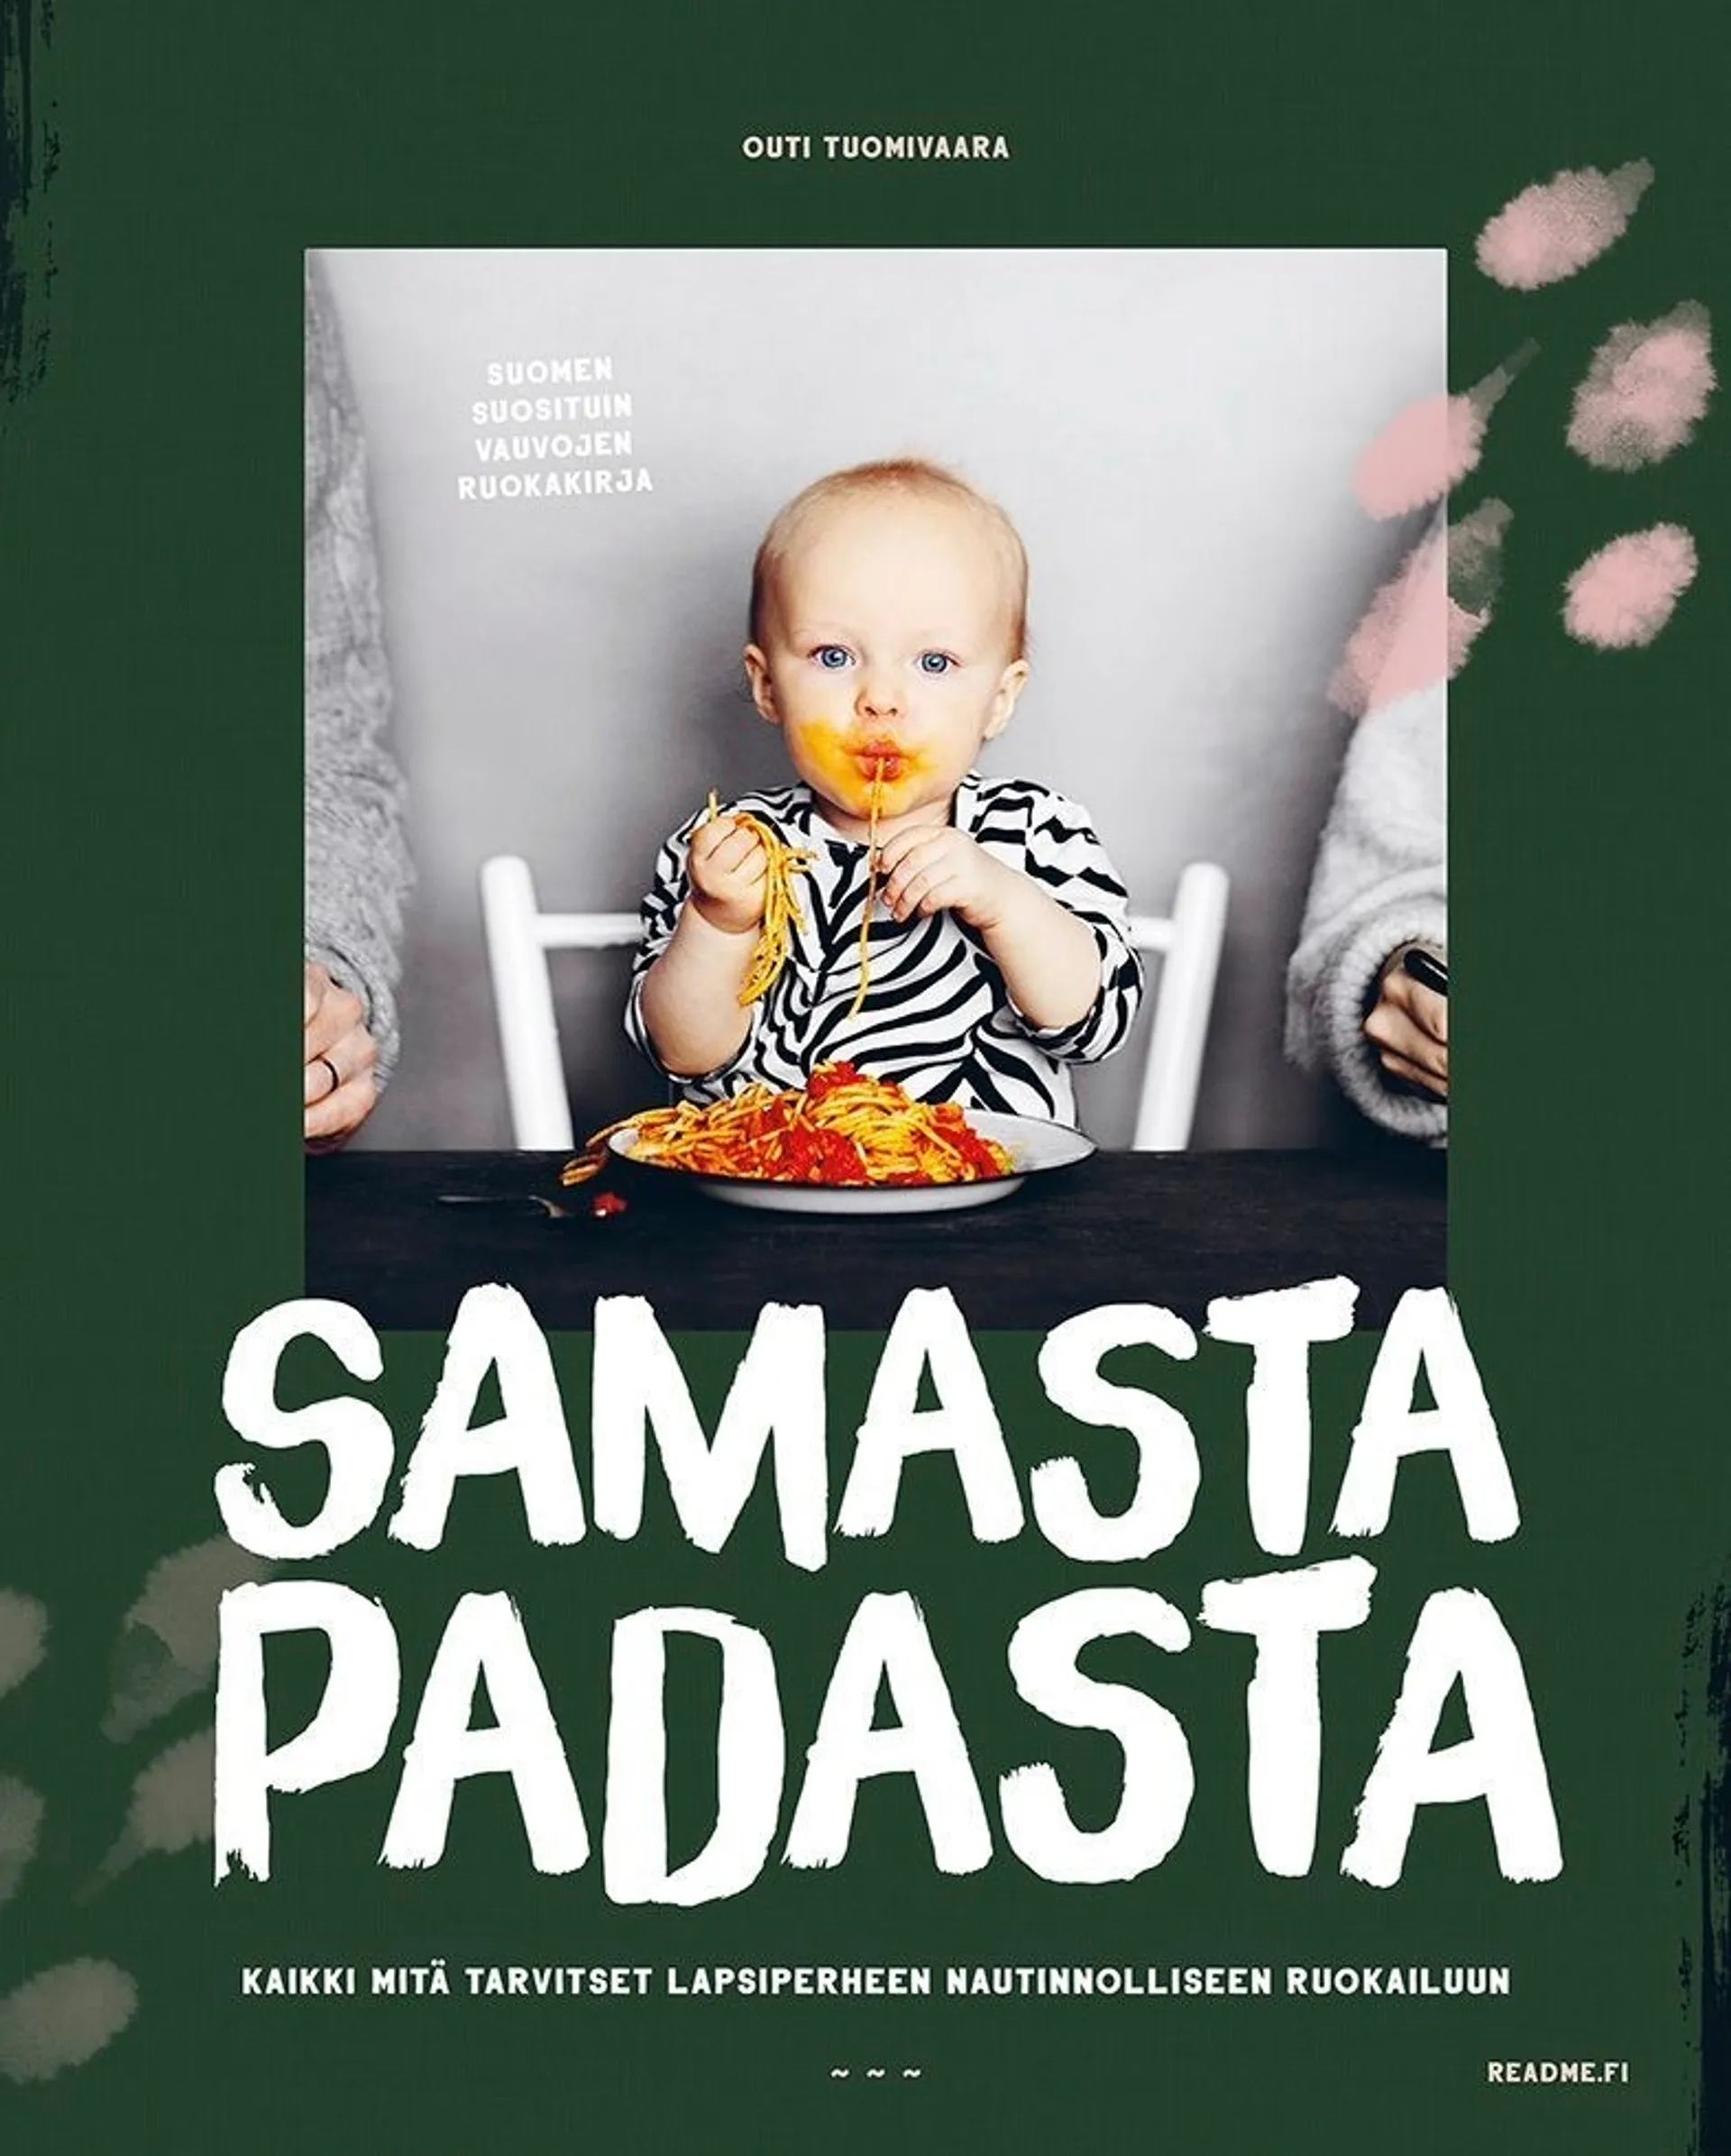 Tuomivaara, Samasta padasta I & II (2023) - Kaikki mitä tarvitset lapsiperheen nautinnolliseen ruokailuun